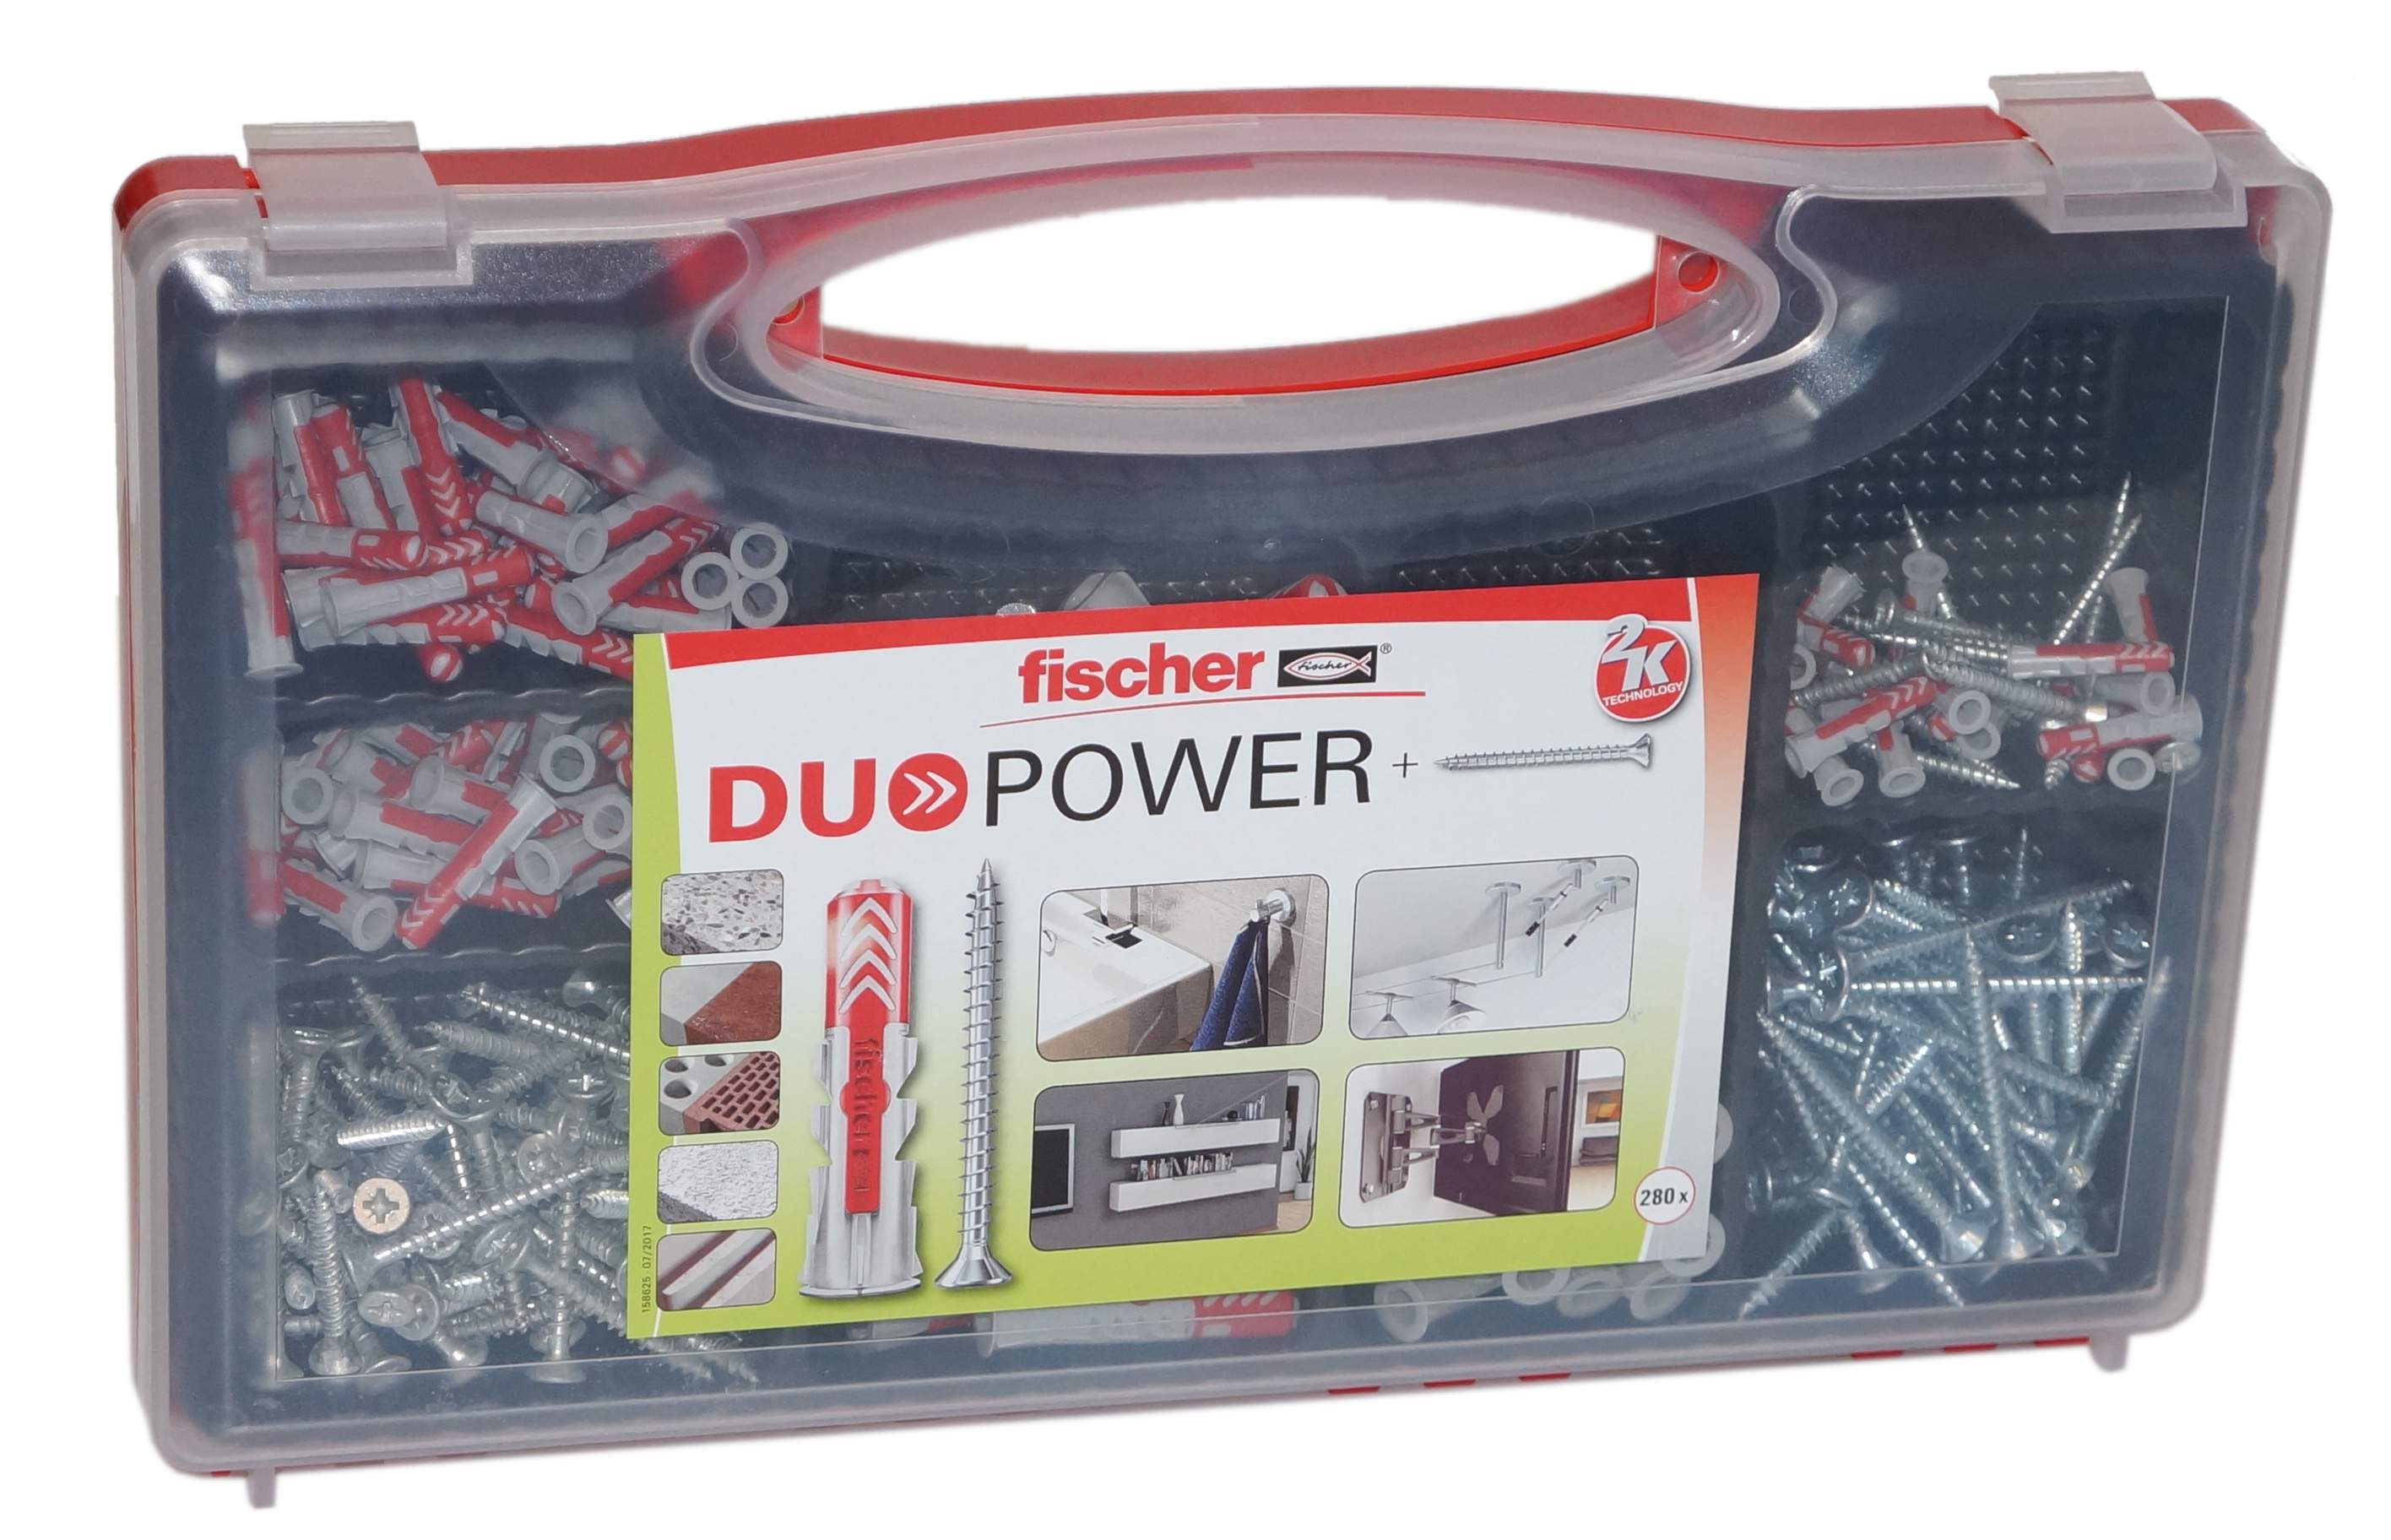 Redbox Duopower 5,6,8,10 plus Schraube